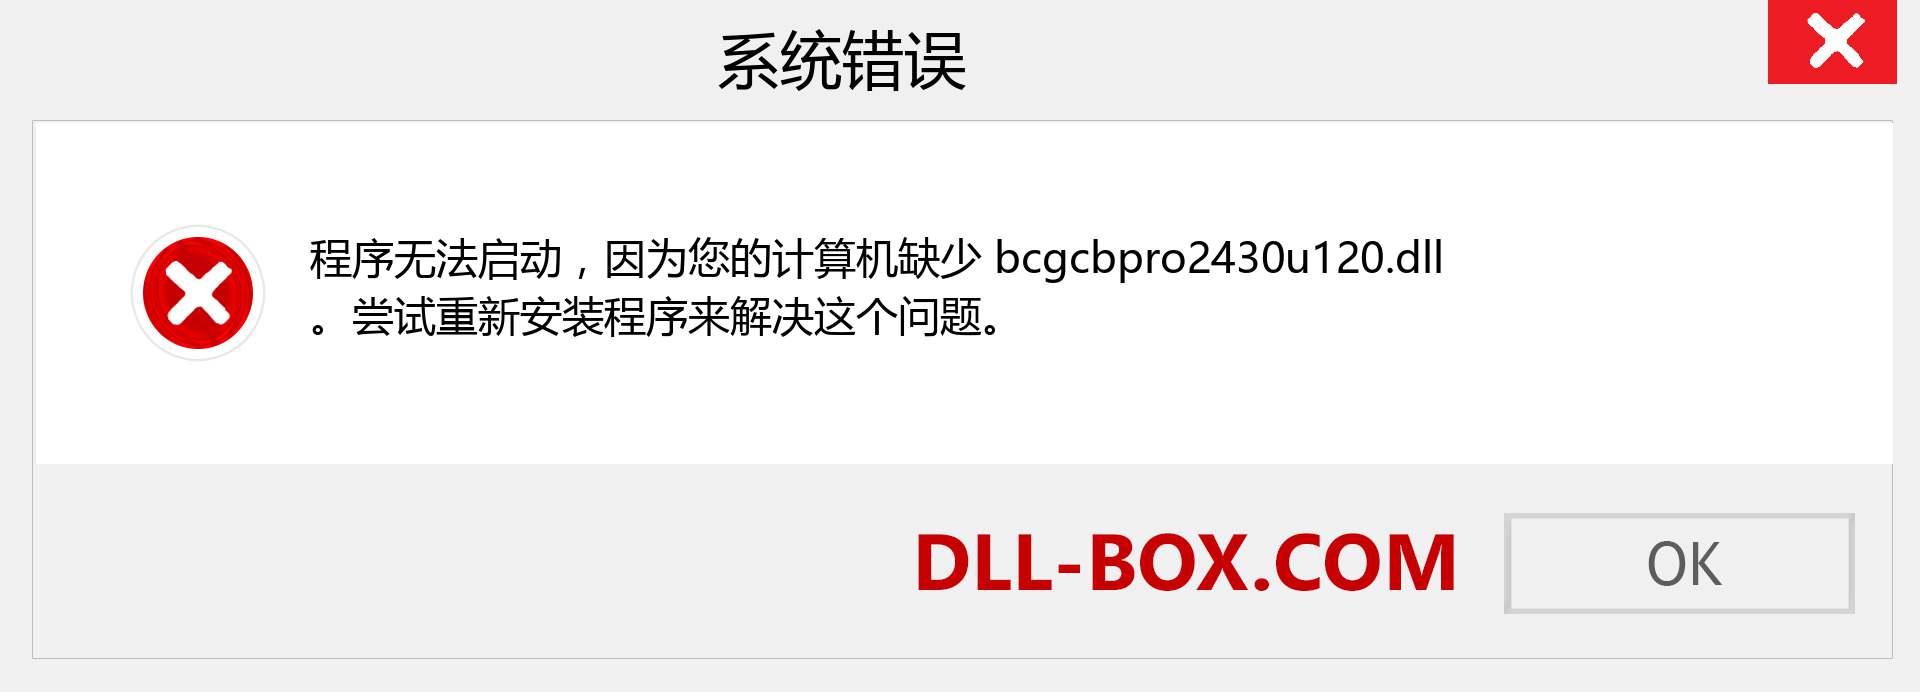 bcgcbpro2430u120.dll 文件丢失？。 适用于 Windows 7、8、10 的下载 - 修复 Windows、照片、图像上的 bcgcbpro2430u120 dll 丢失错误